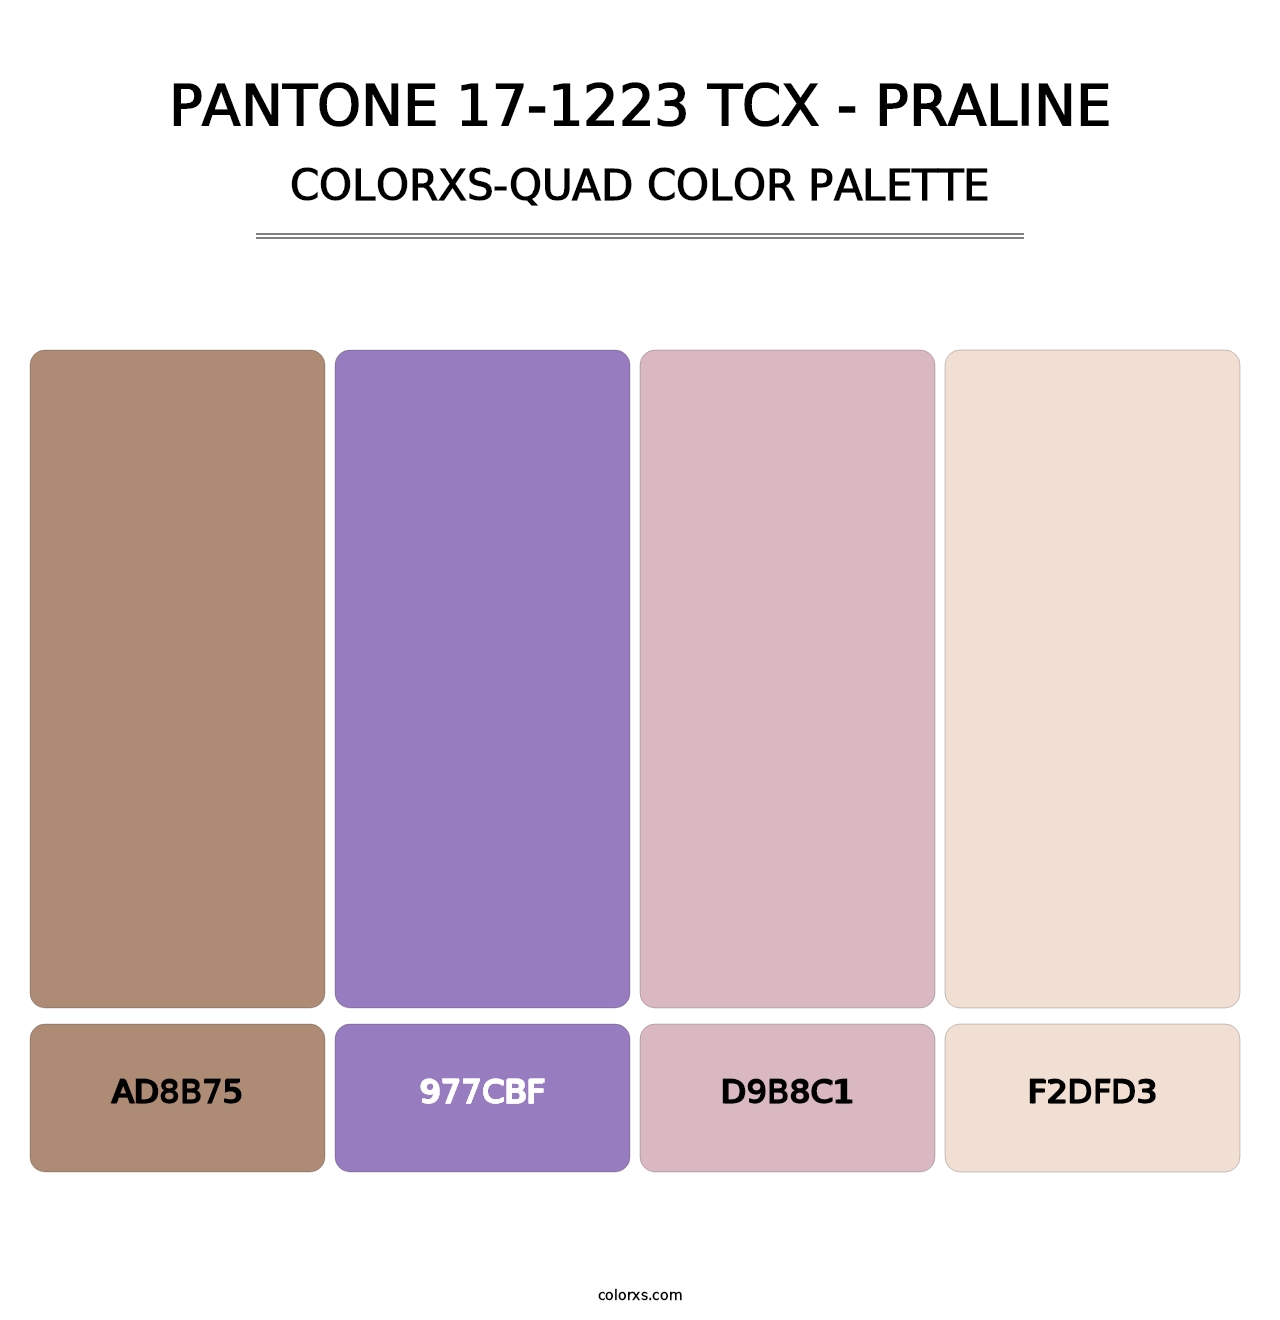 PANTONE 17-1223 TCX - Praline - Colorxs Quad Palette